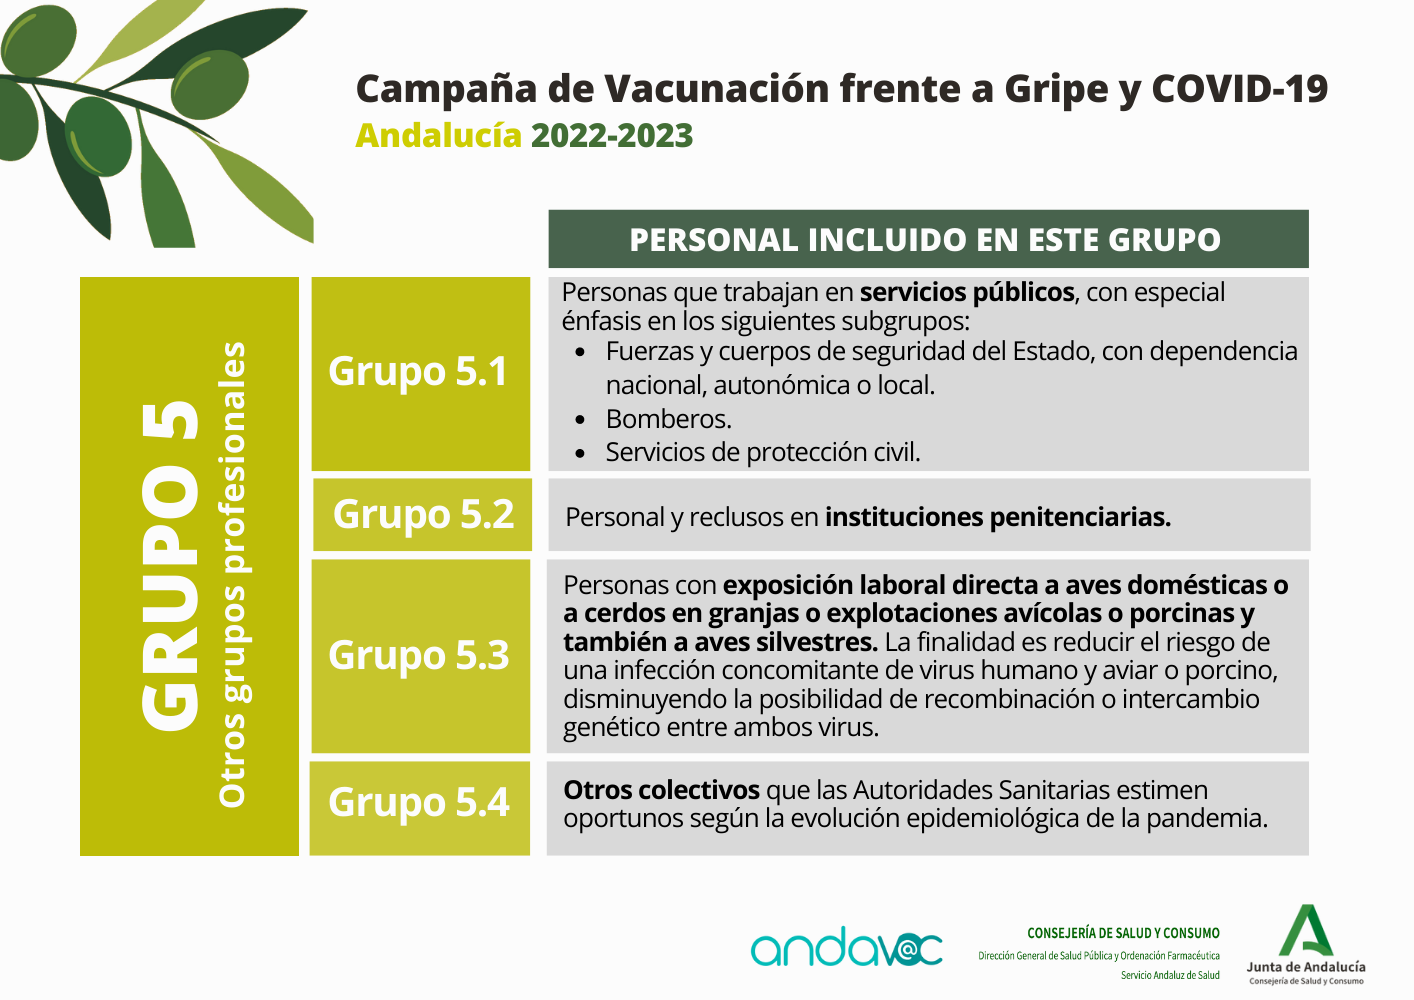 Campaña de Vacunación frente a Gripe y COVID-19. Grupo 5